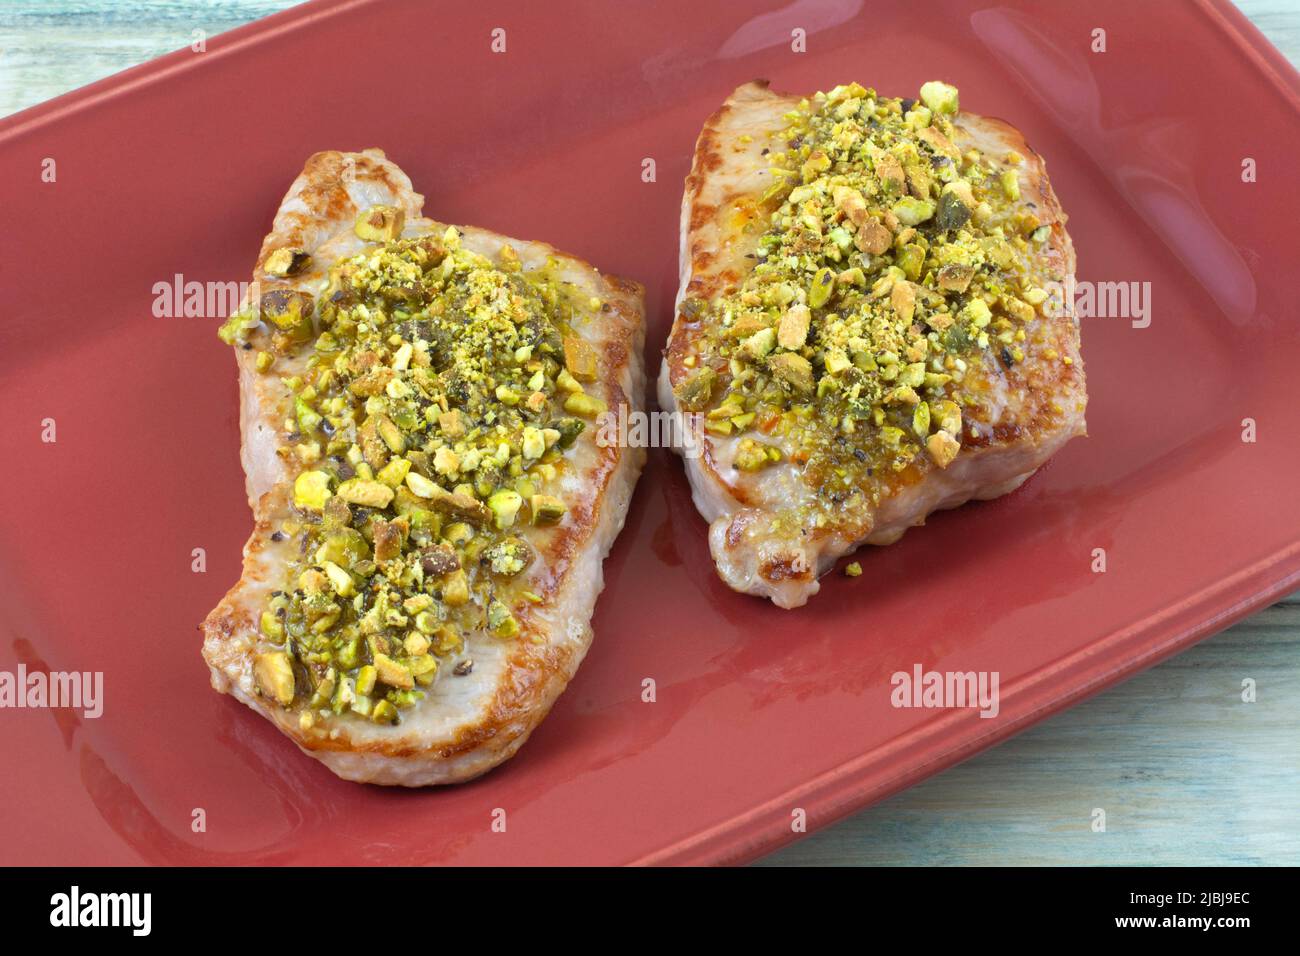 Deux côtelettes de porc désossées avec pistaches écrasées sur une assiette de service rouge Banque D'Images